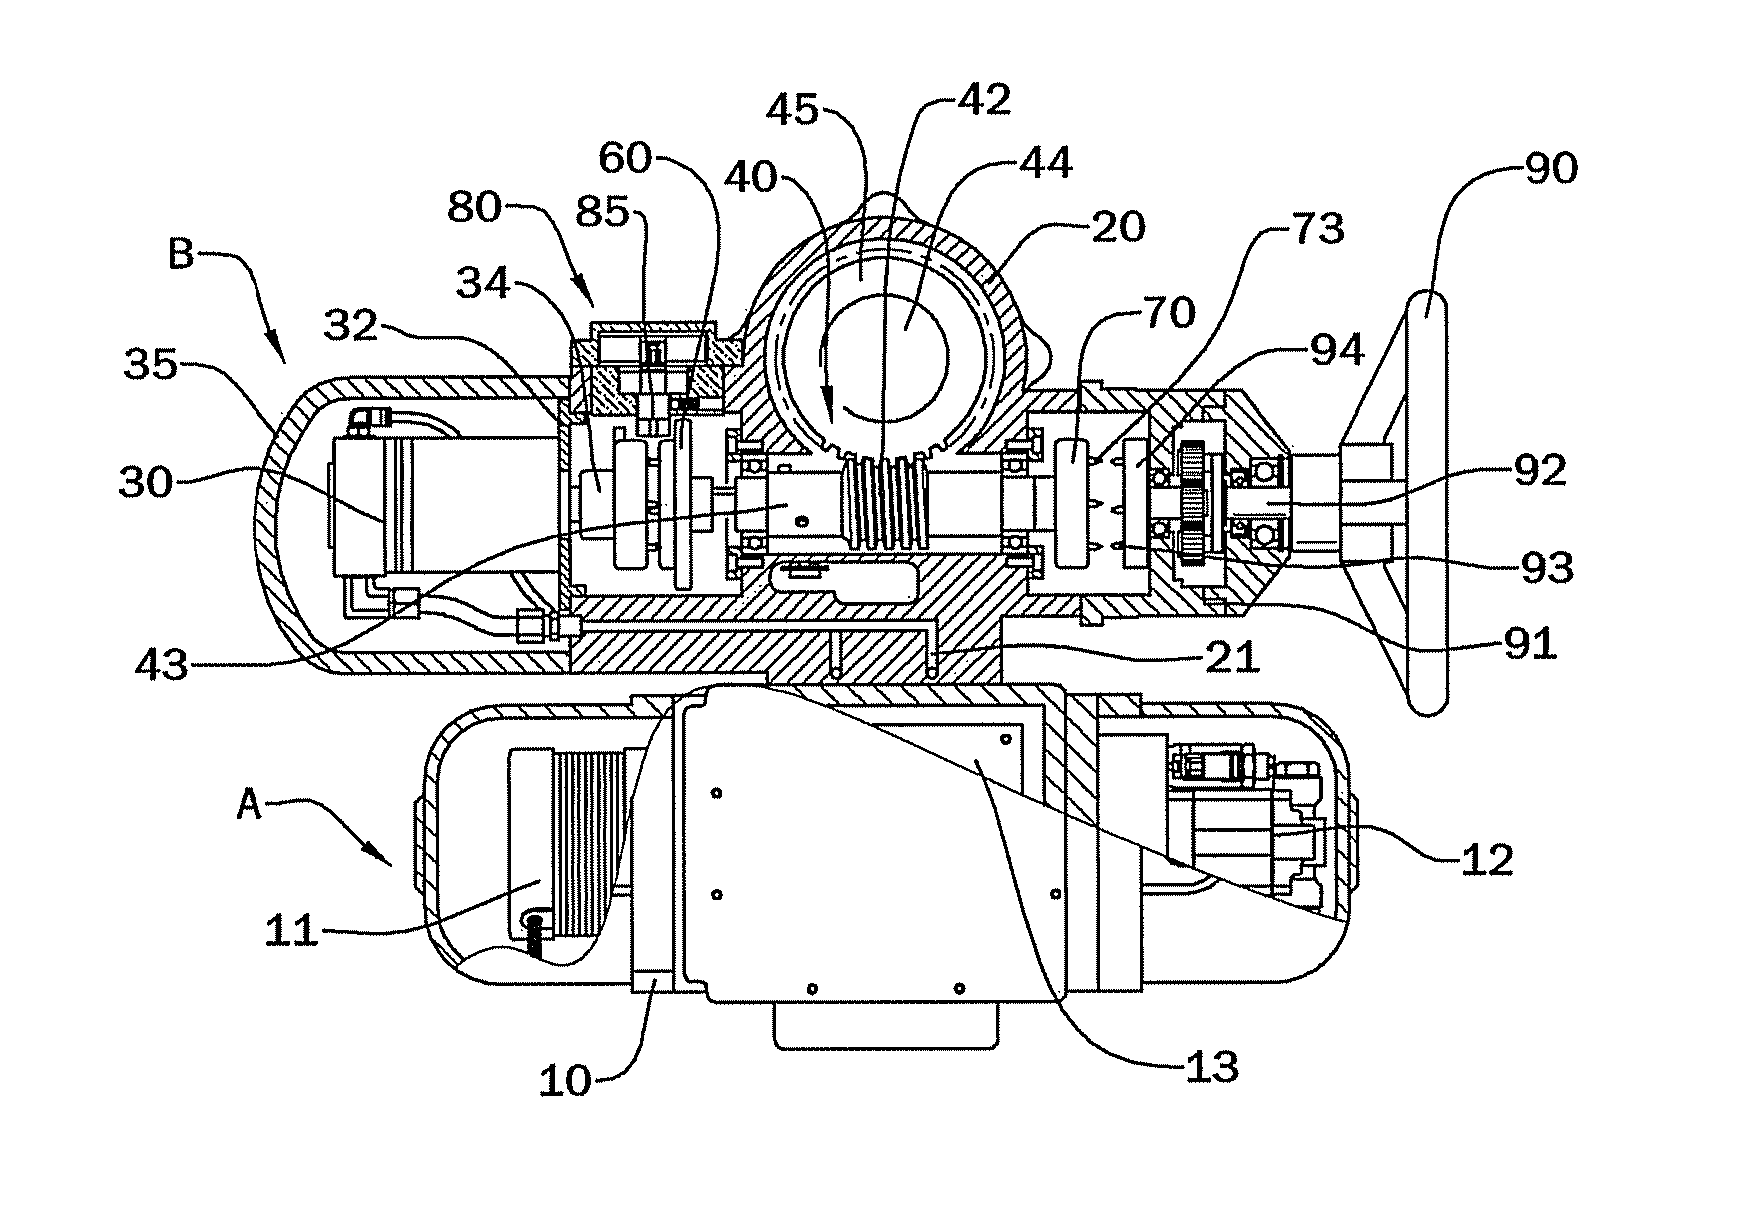 Multi-turn hydraulic actuator